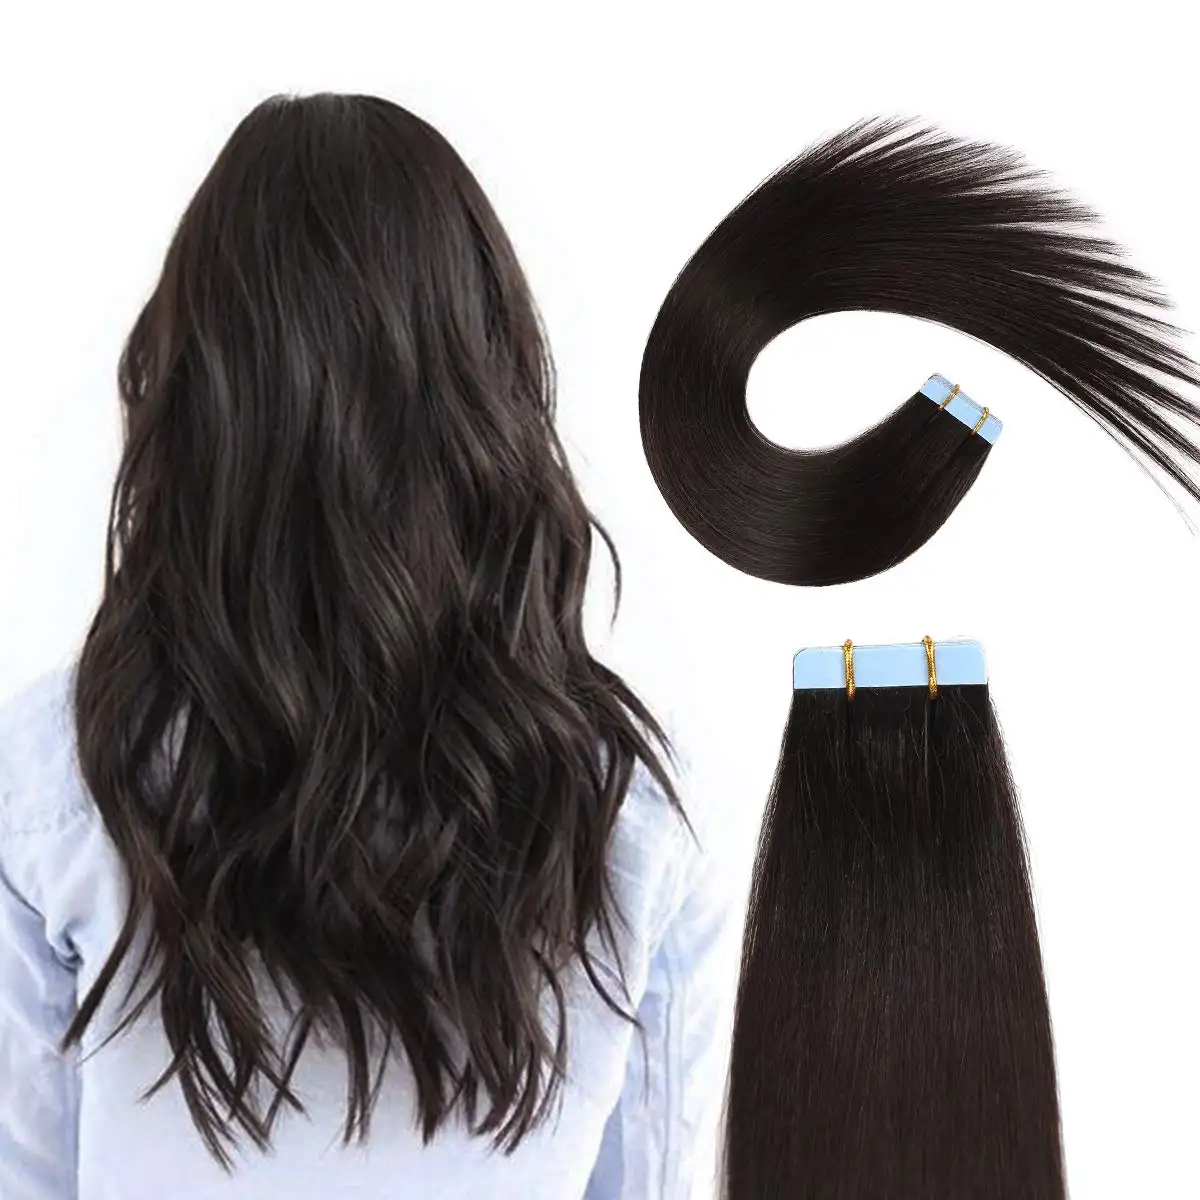 RTS 12A Nagel haut ausgerichtet 100% menschliches Haar verlängerung sband in Haar verlängerungen remy Großhandel Rohes jungfräuliches Band Haar verlängerungen